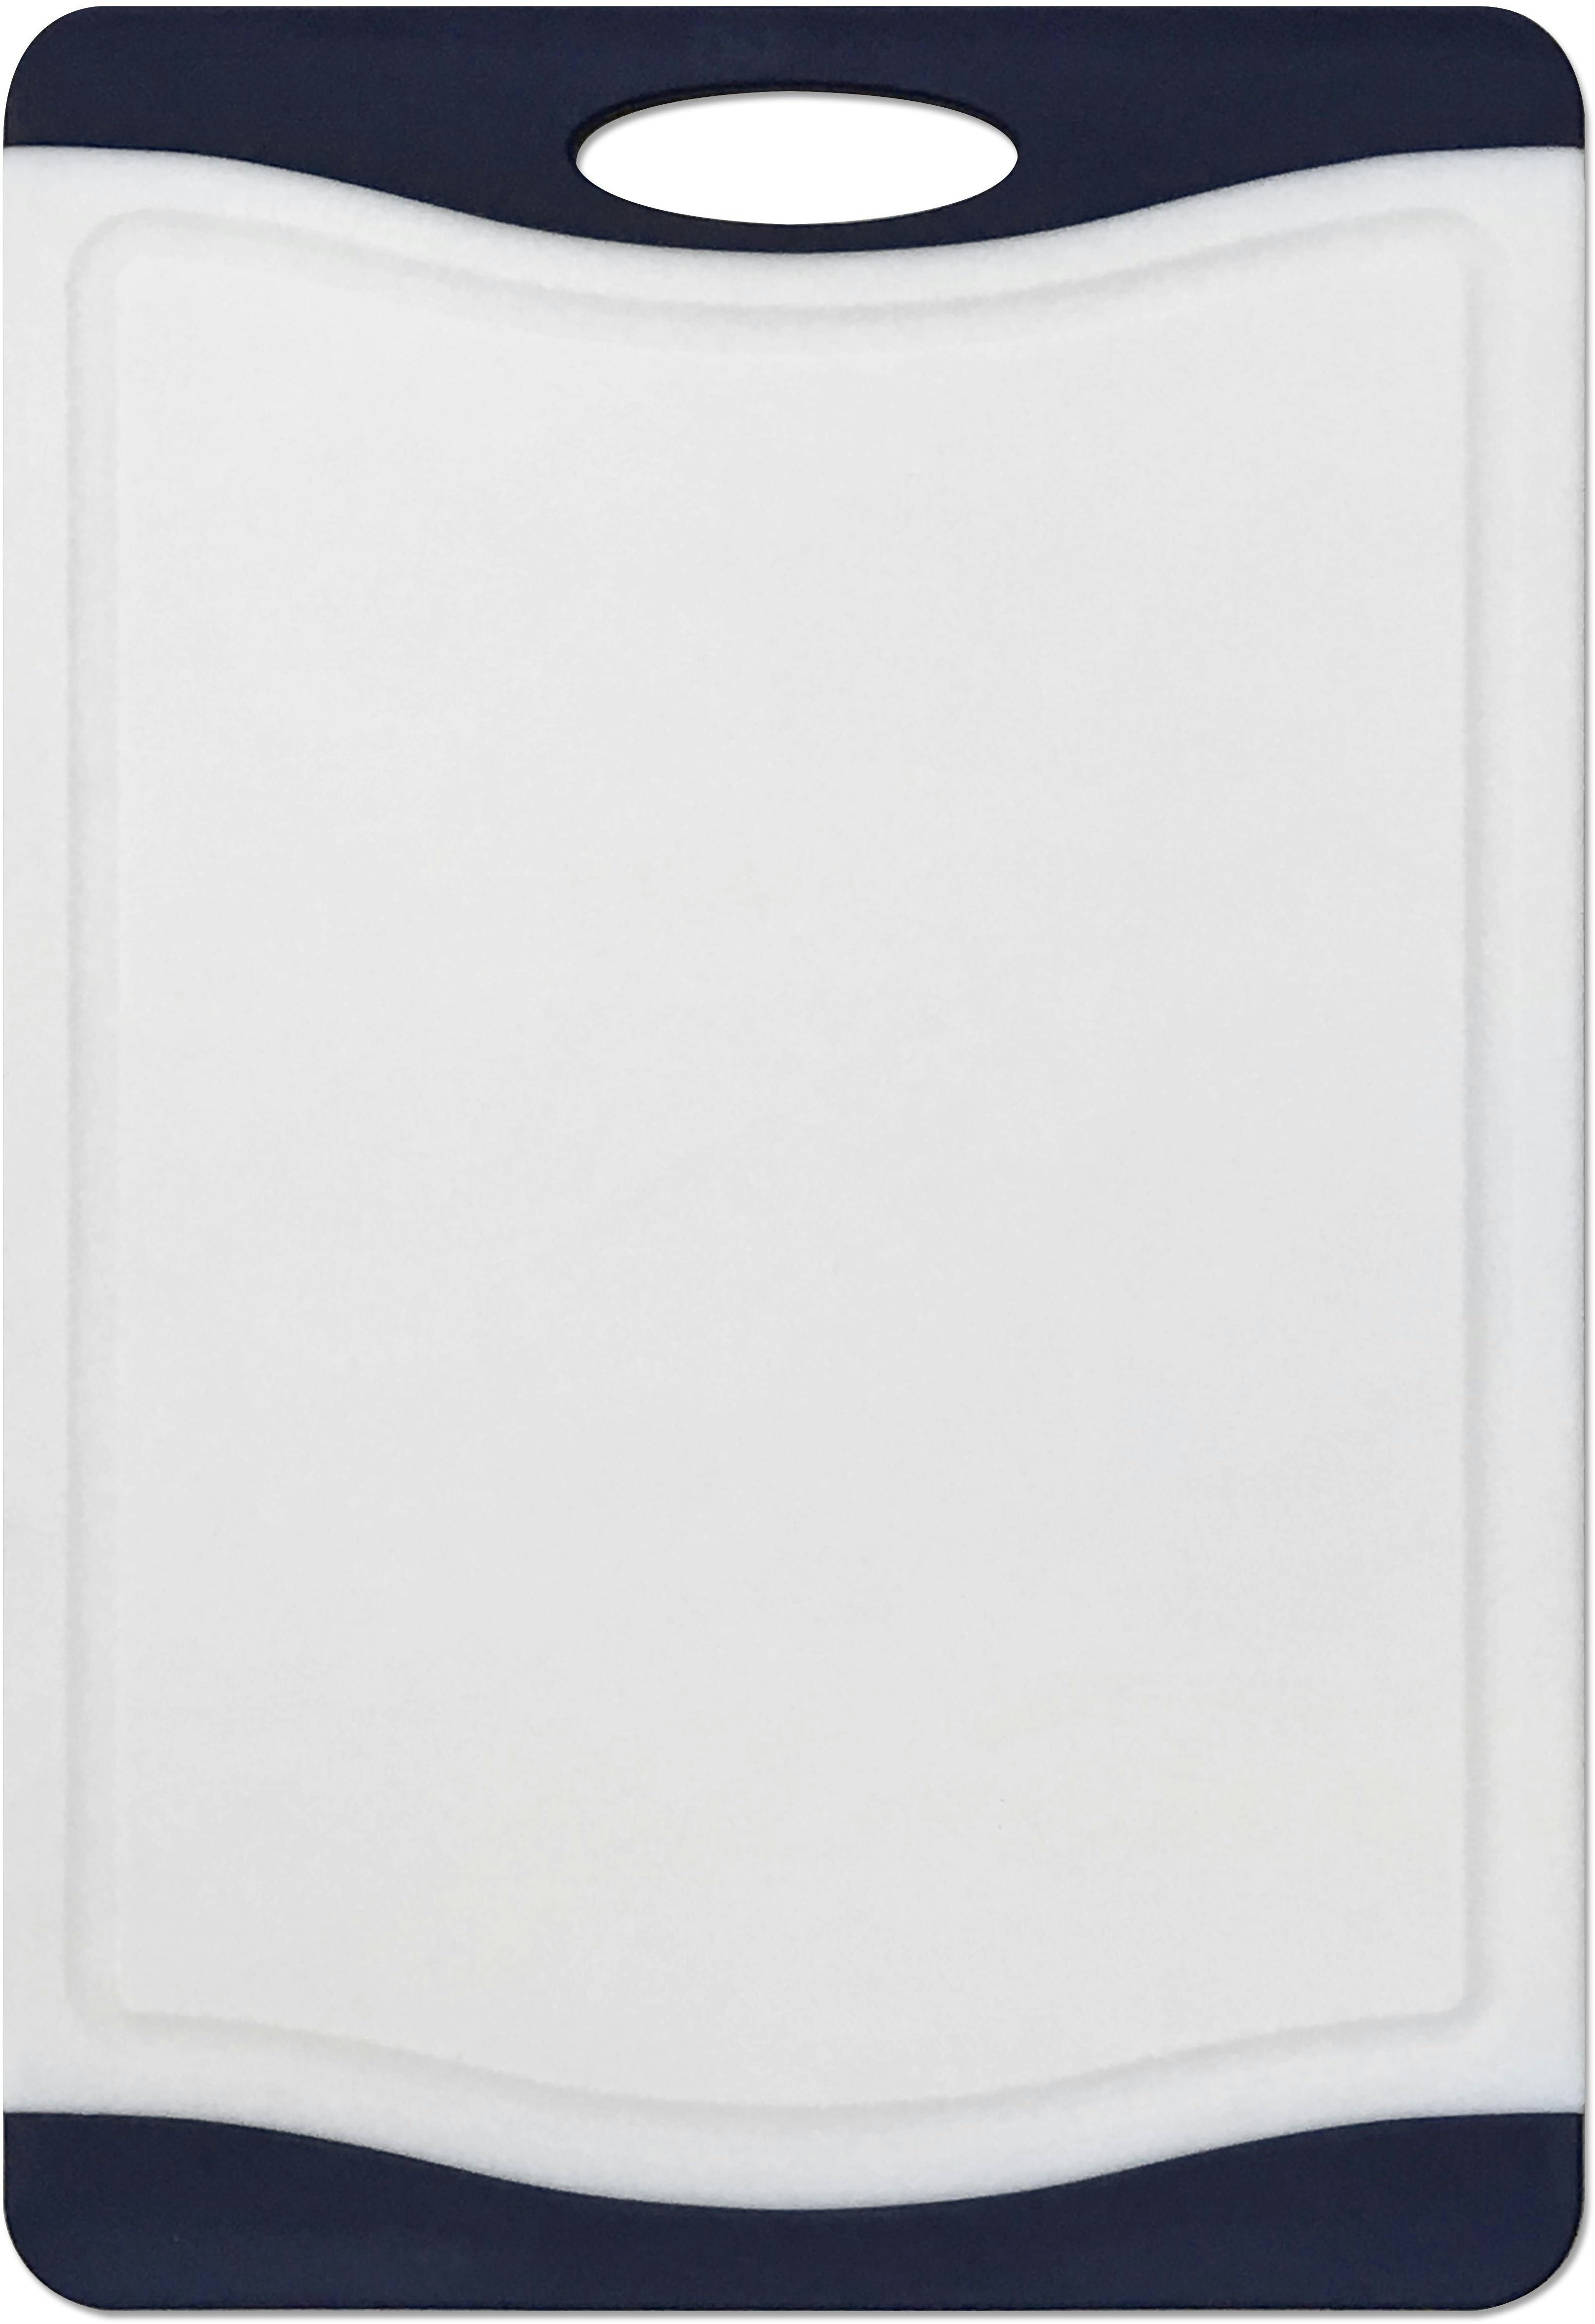 Tarrington House Schneidebrett, Polypropylene/thermoplastischem Kunststoff, 44.5 x 30.5 x 1.1 cm, rutschfeste Kanten, weiß/dunkelblau